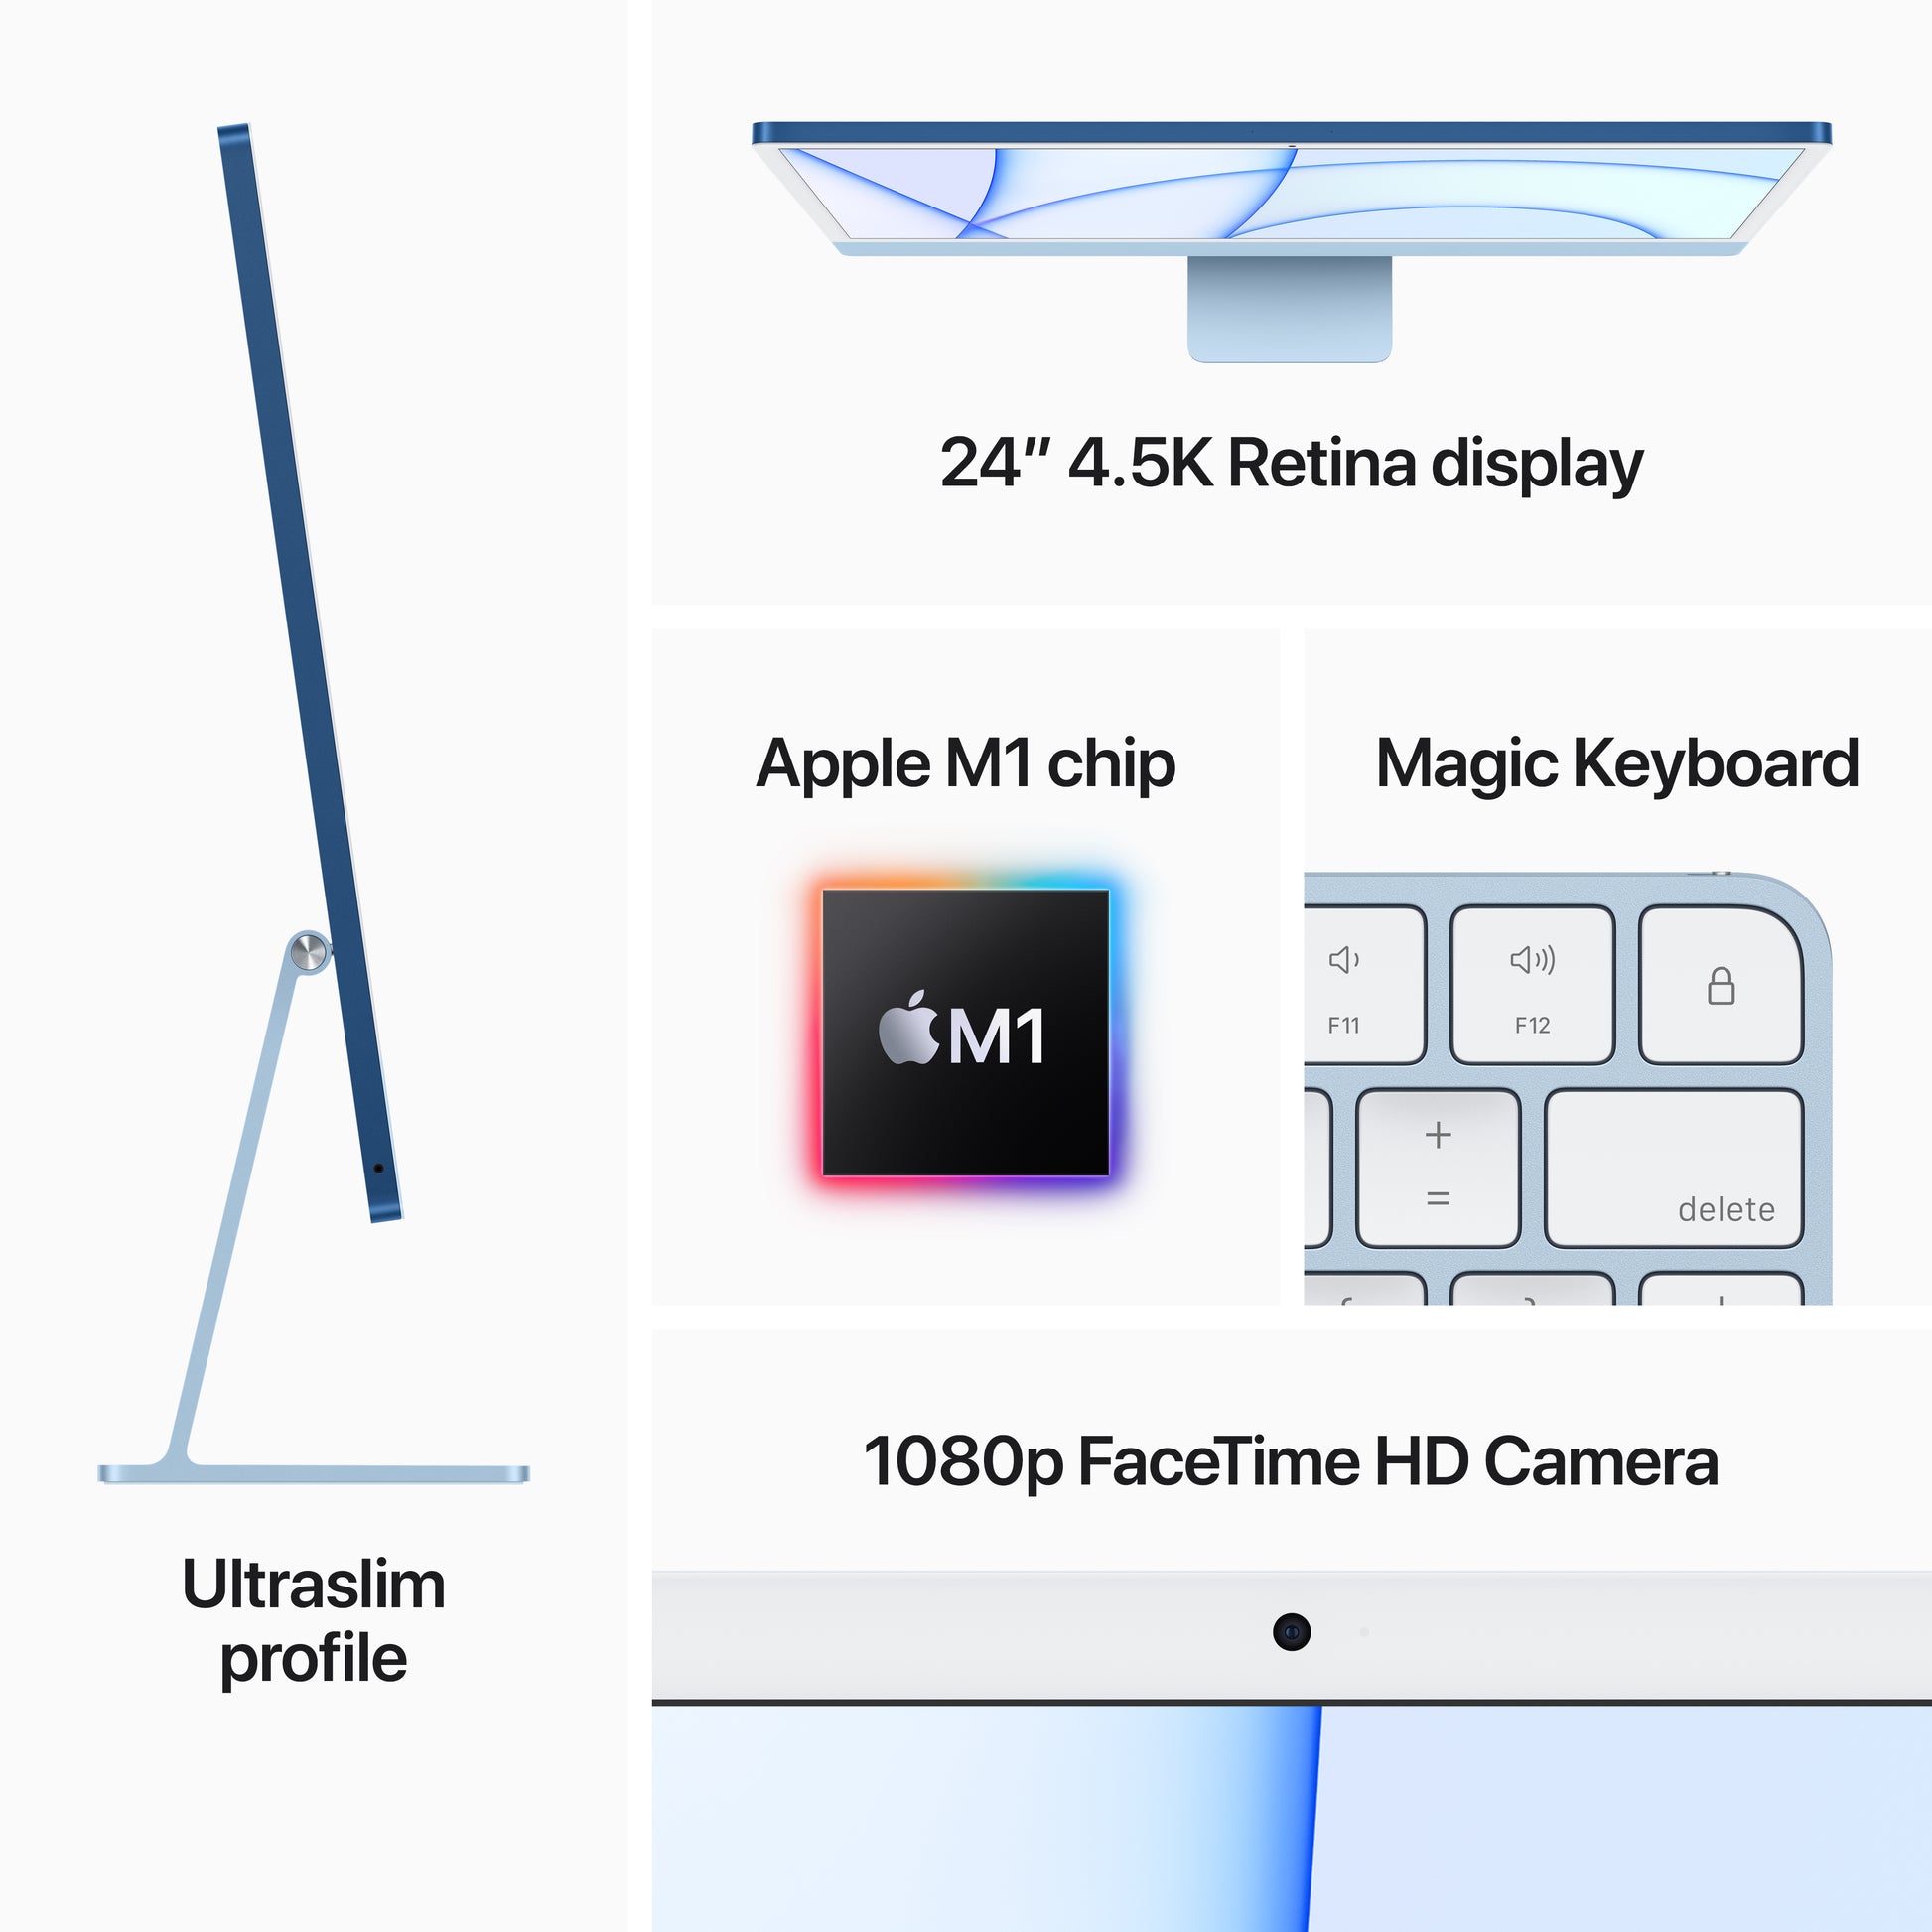 Apple iMac 24-inch | M1 | 8-core CPU | 7-core GPU | Pink